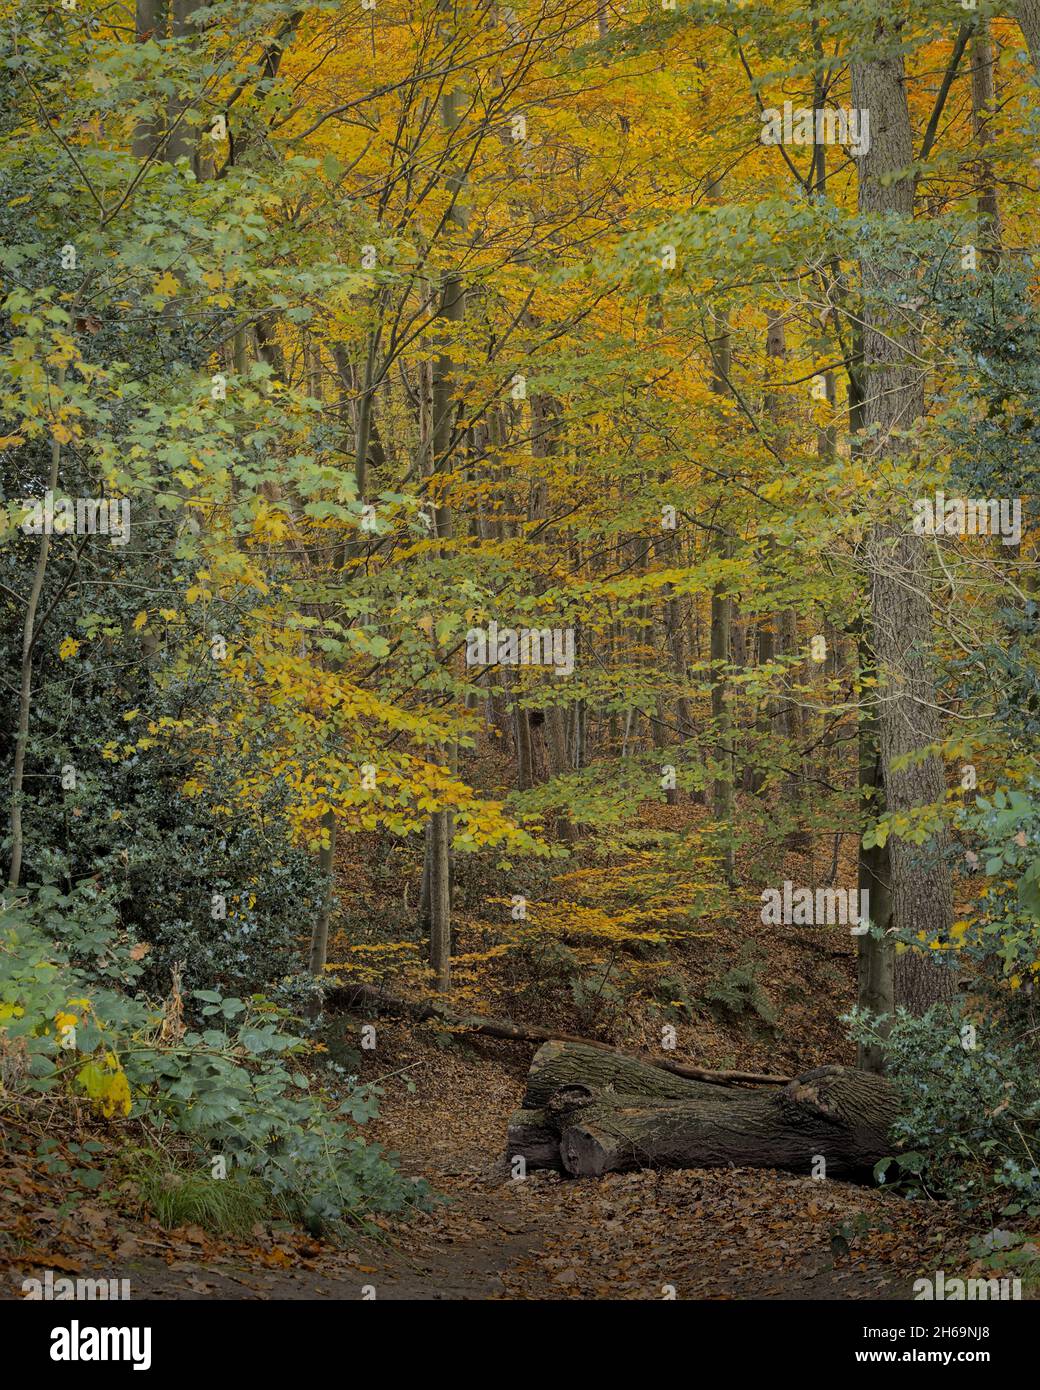 Im Herbst ist es eine ruhige Waldszene, die Blätter haben sich dort gedreht, wo der gefällte Baum liegt, Eckington Woods, Moss Valley, North East Derbyshire. Stockfoto